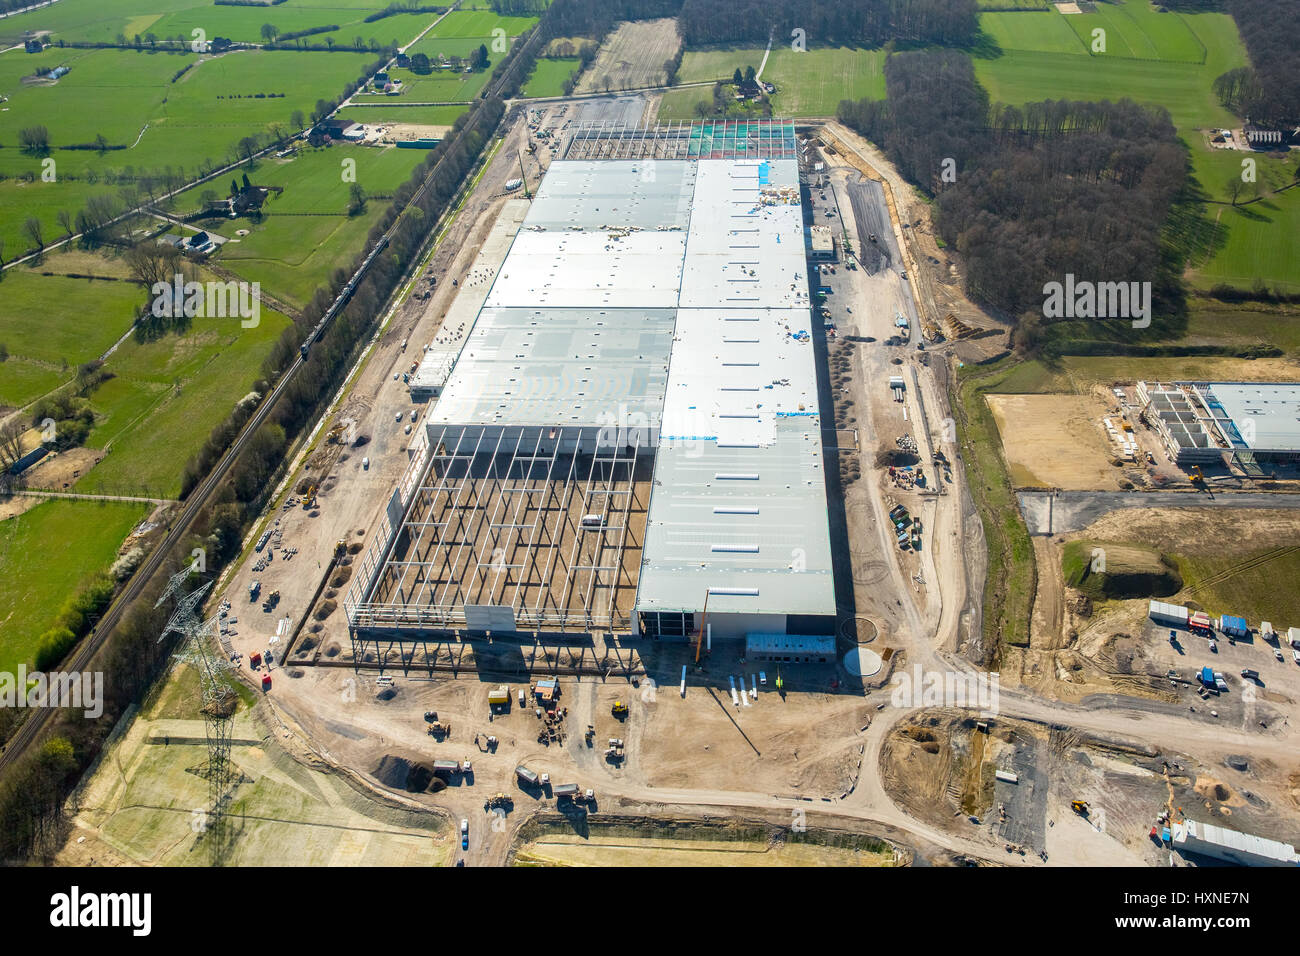 Amazon-Logistikzentrum in Werne. 'EDE4', Logistik Zentrum "DTM1" in Werne,  Werne, Ruhr Area, North Rhine-Westphalia, Germany, Amazon Logistikzentrum  Stockfotografie - Alamy